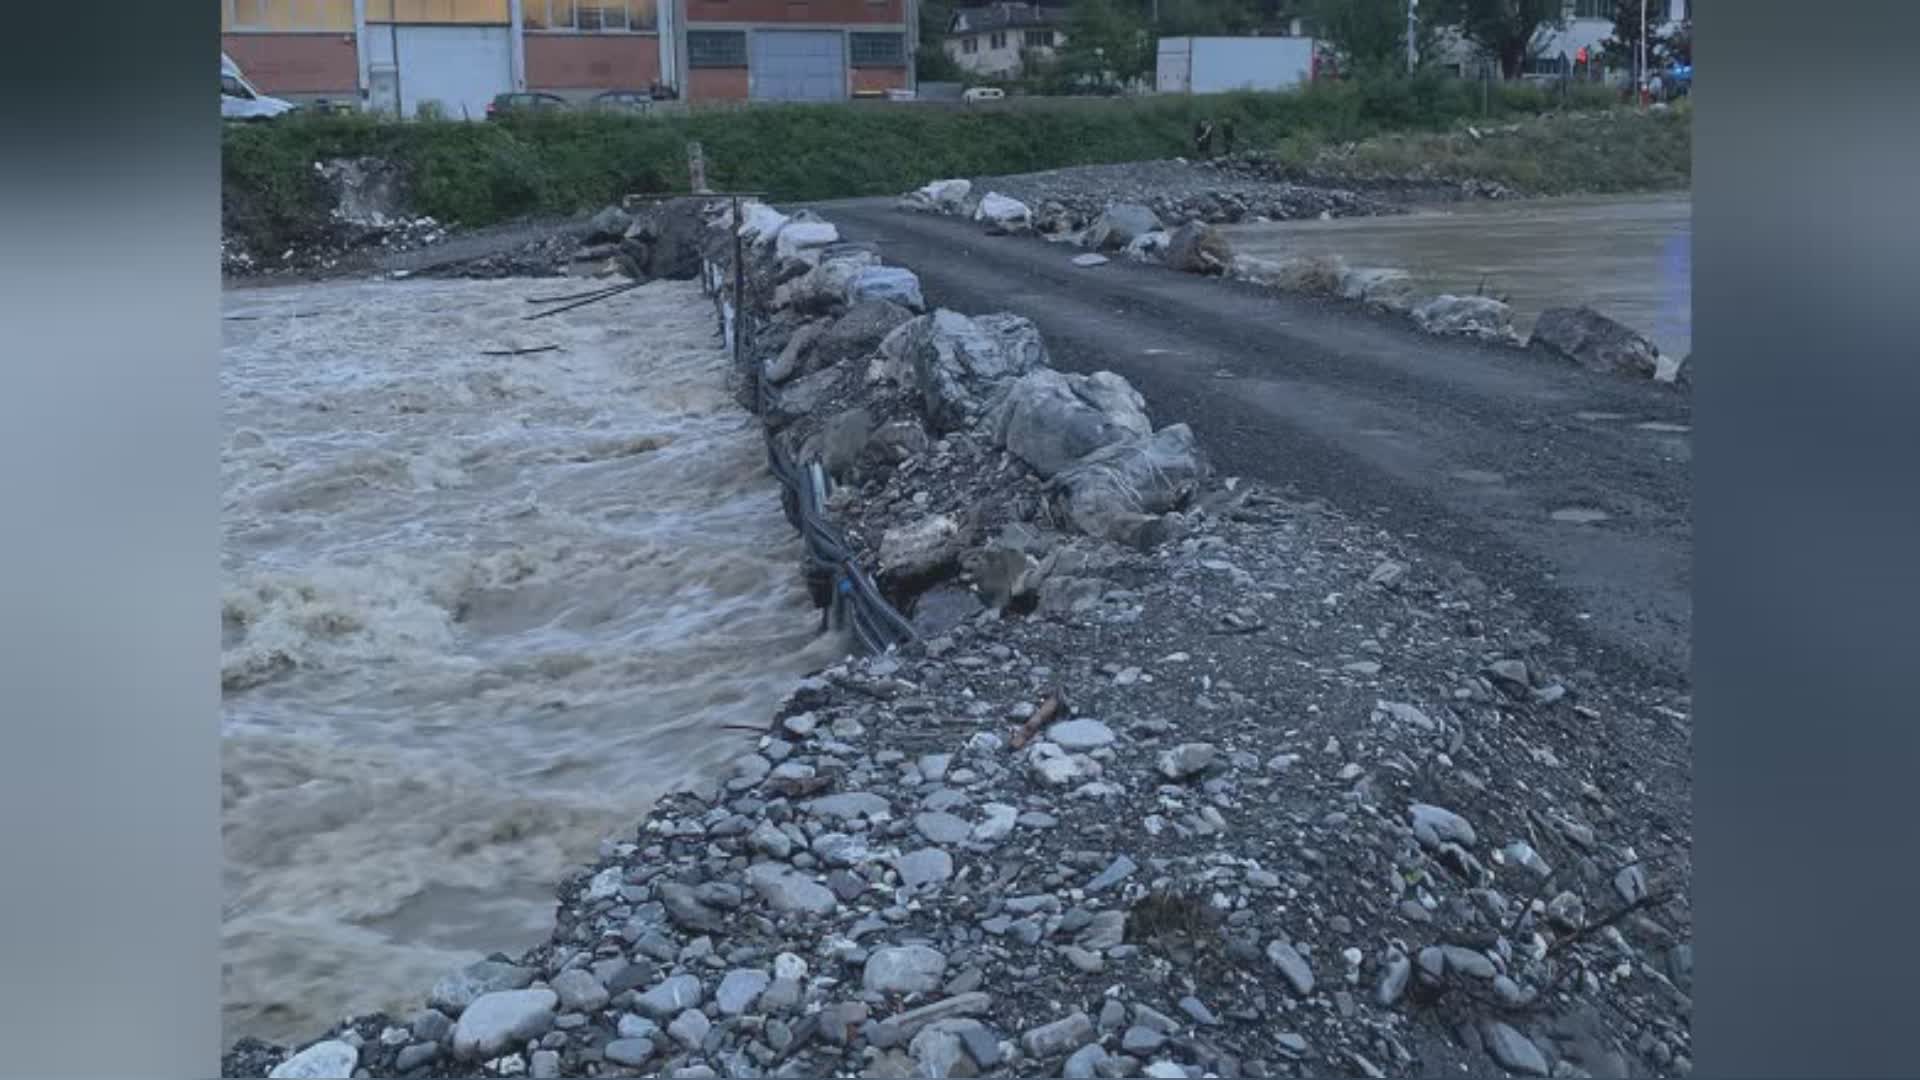 Ronco Scrivia, livello dell'acqua troppo alto: chiuso il guado del torrente